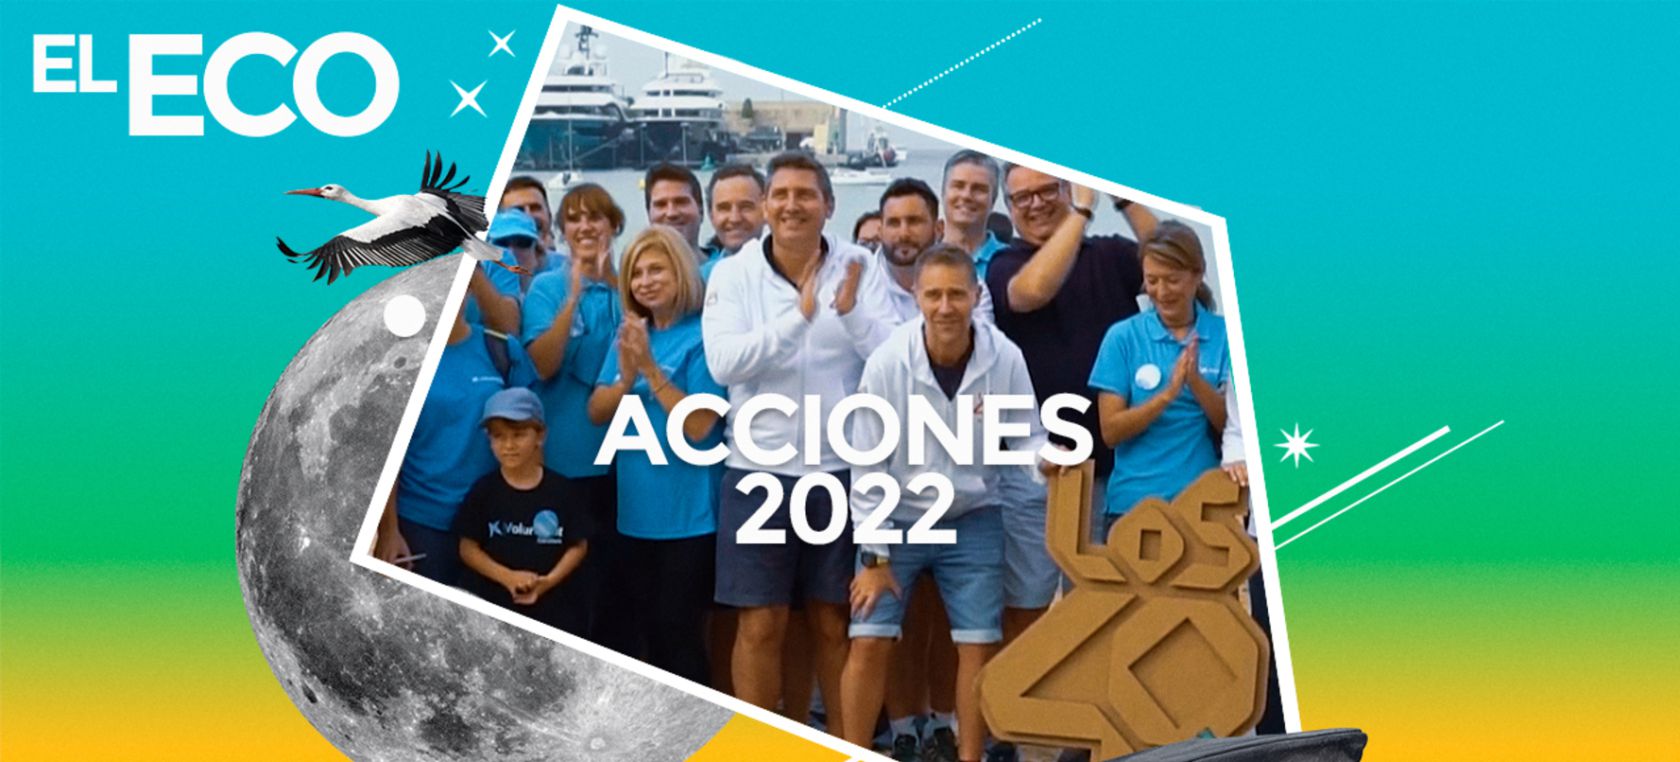 Acciones 2022 El Eco de LOS40